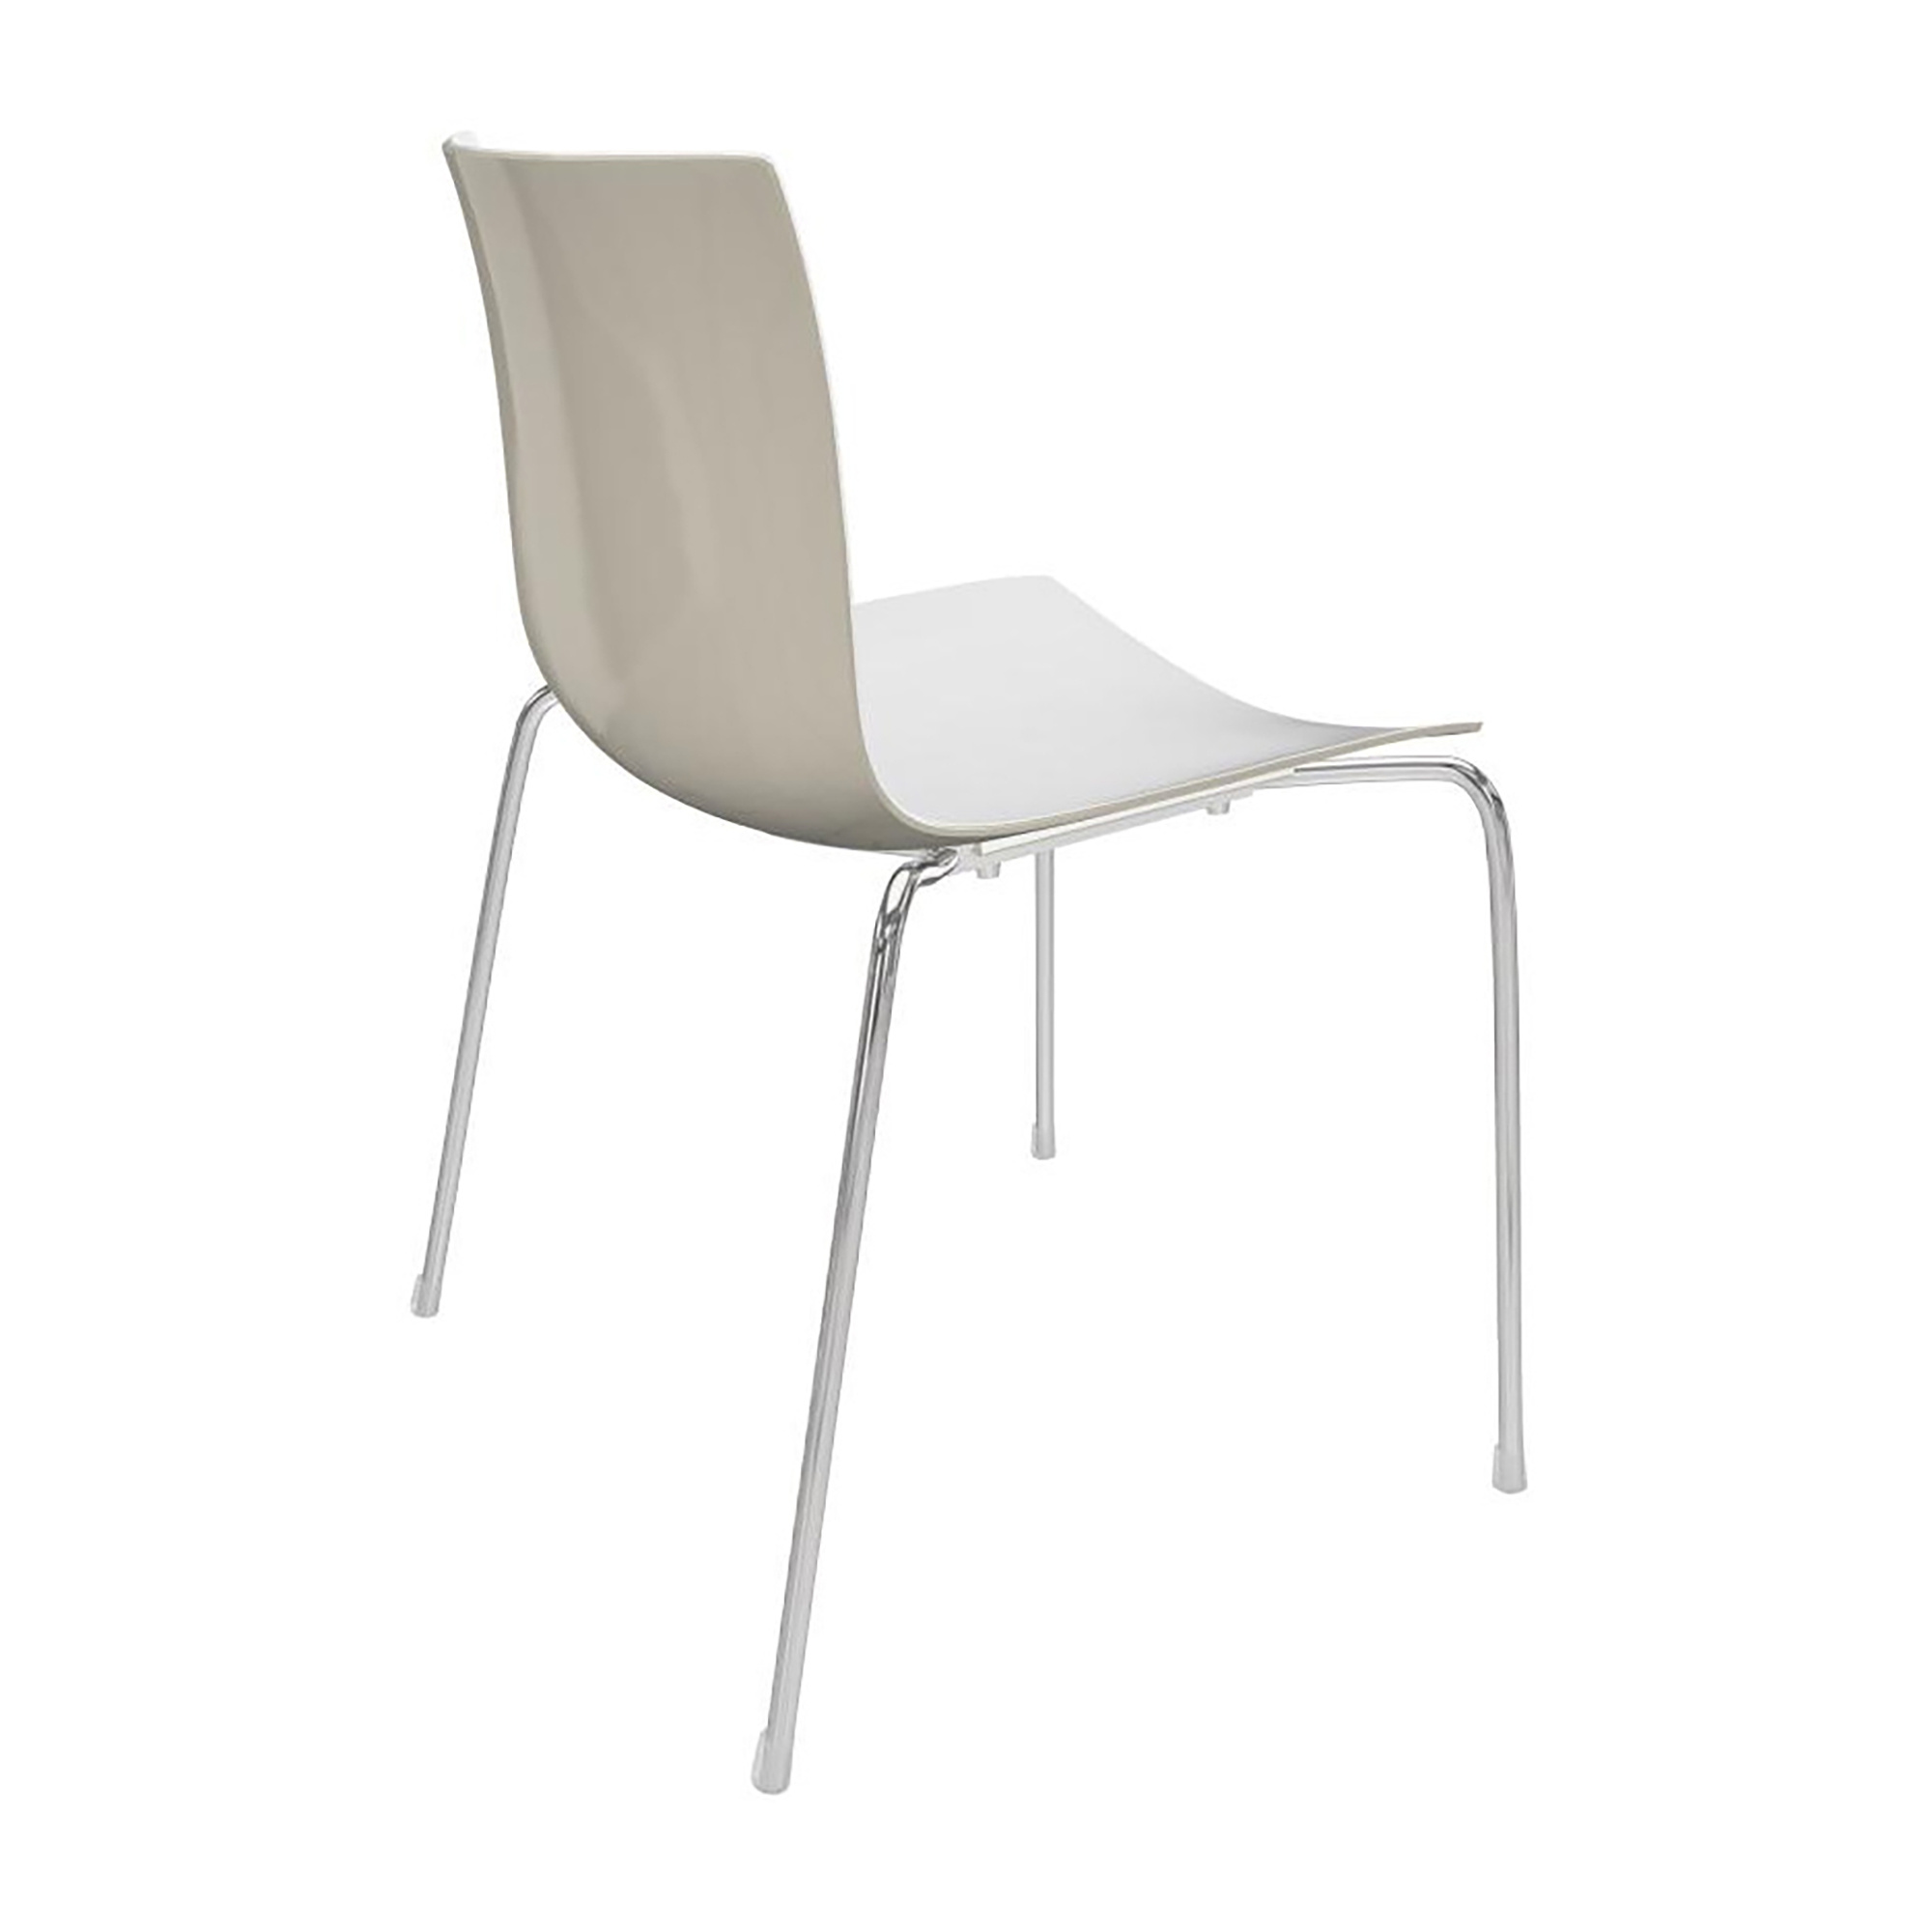 Arper - Catifa 46 0251 Chair Bicoloured Frame Chrome - wei/elfenbein/Auenschale glnzend/innen matt/BxTxH 53,5x50,5x80cm/Gestell Stahl vechromt